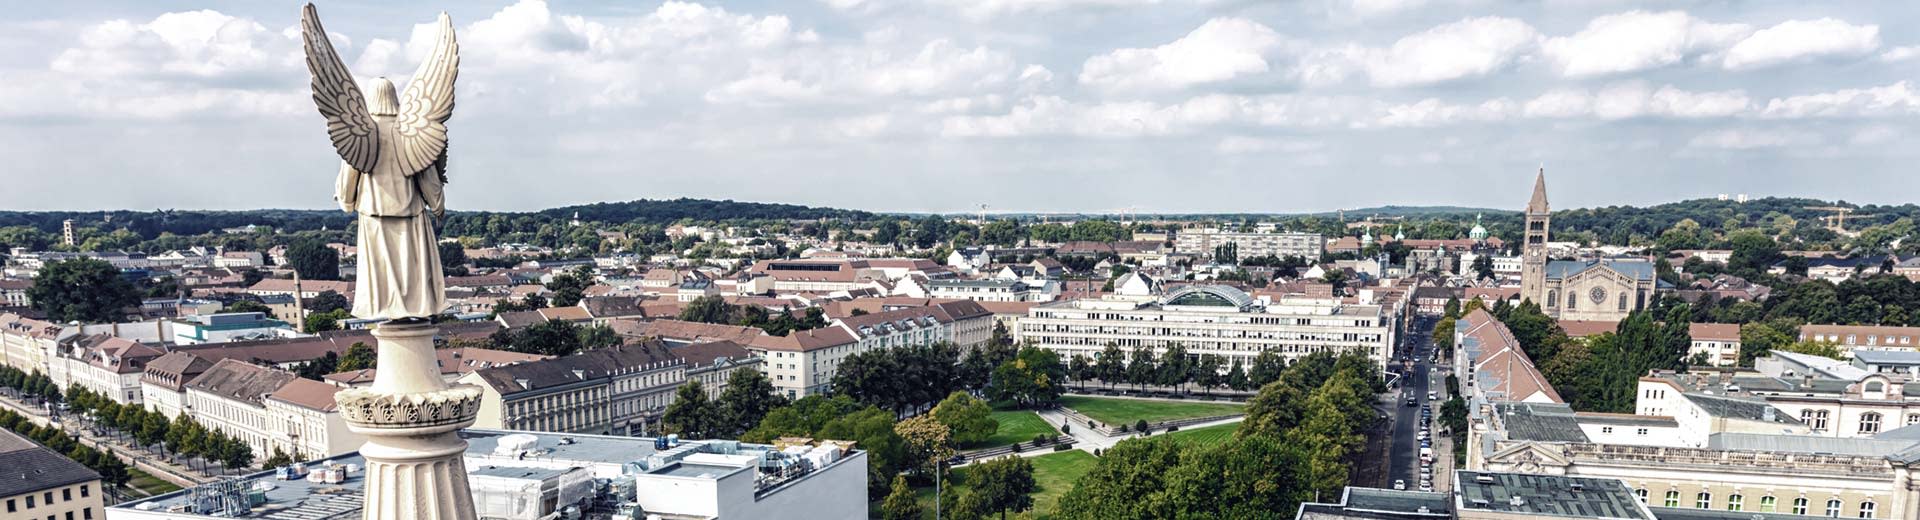 La belle ville est-allemande de Potsdam, avec des constructions de faible hauteur et de nombreux parcs verts.